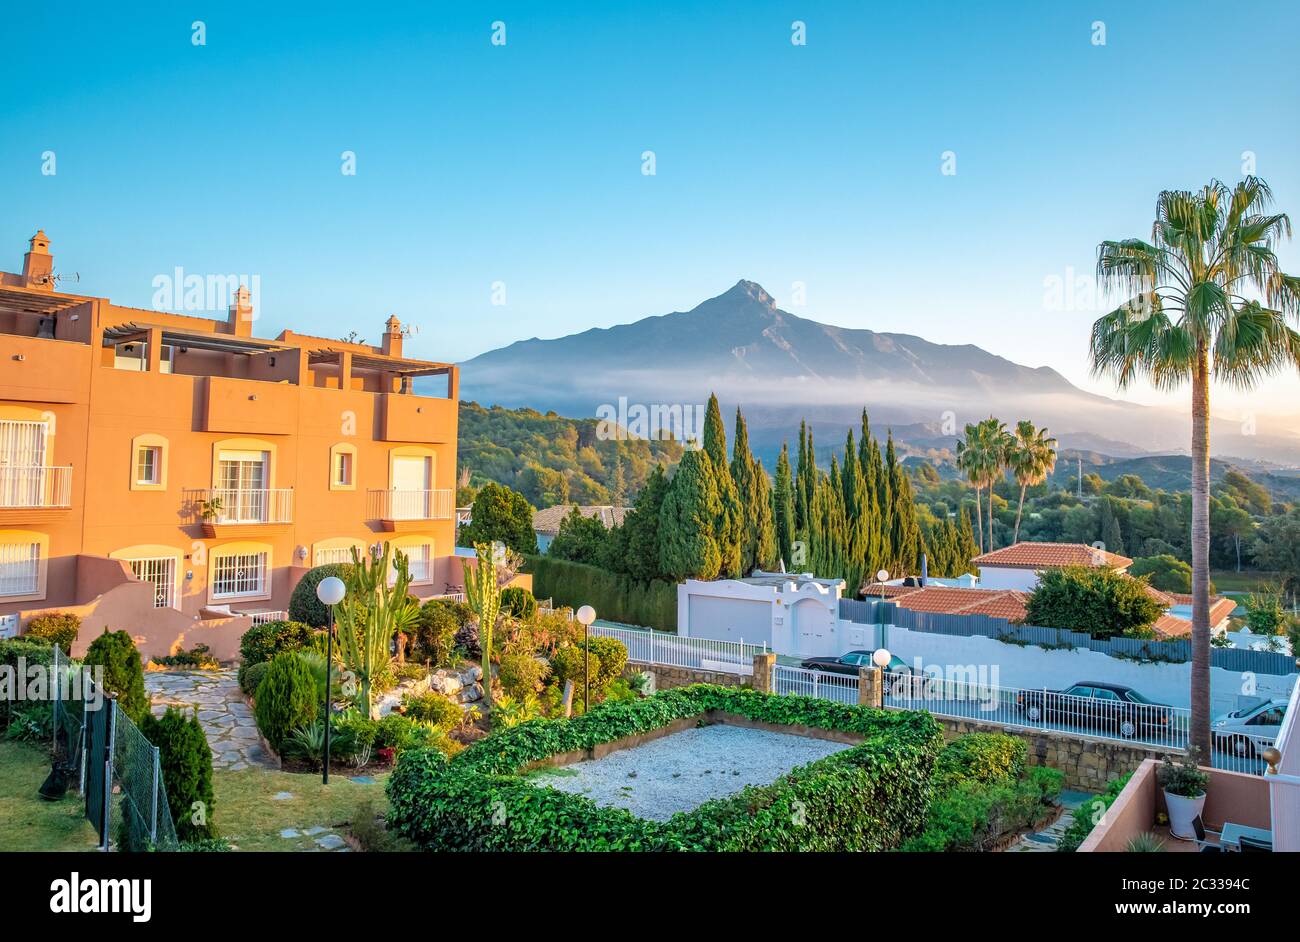 Hotelresort mit einem schönen Blick auf den spanischen Berg La Concha. Stockfoto